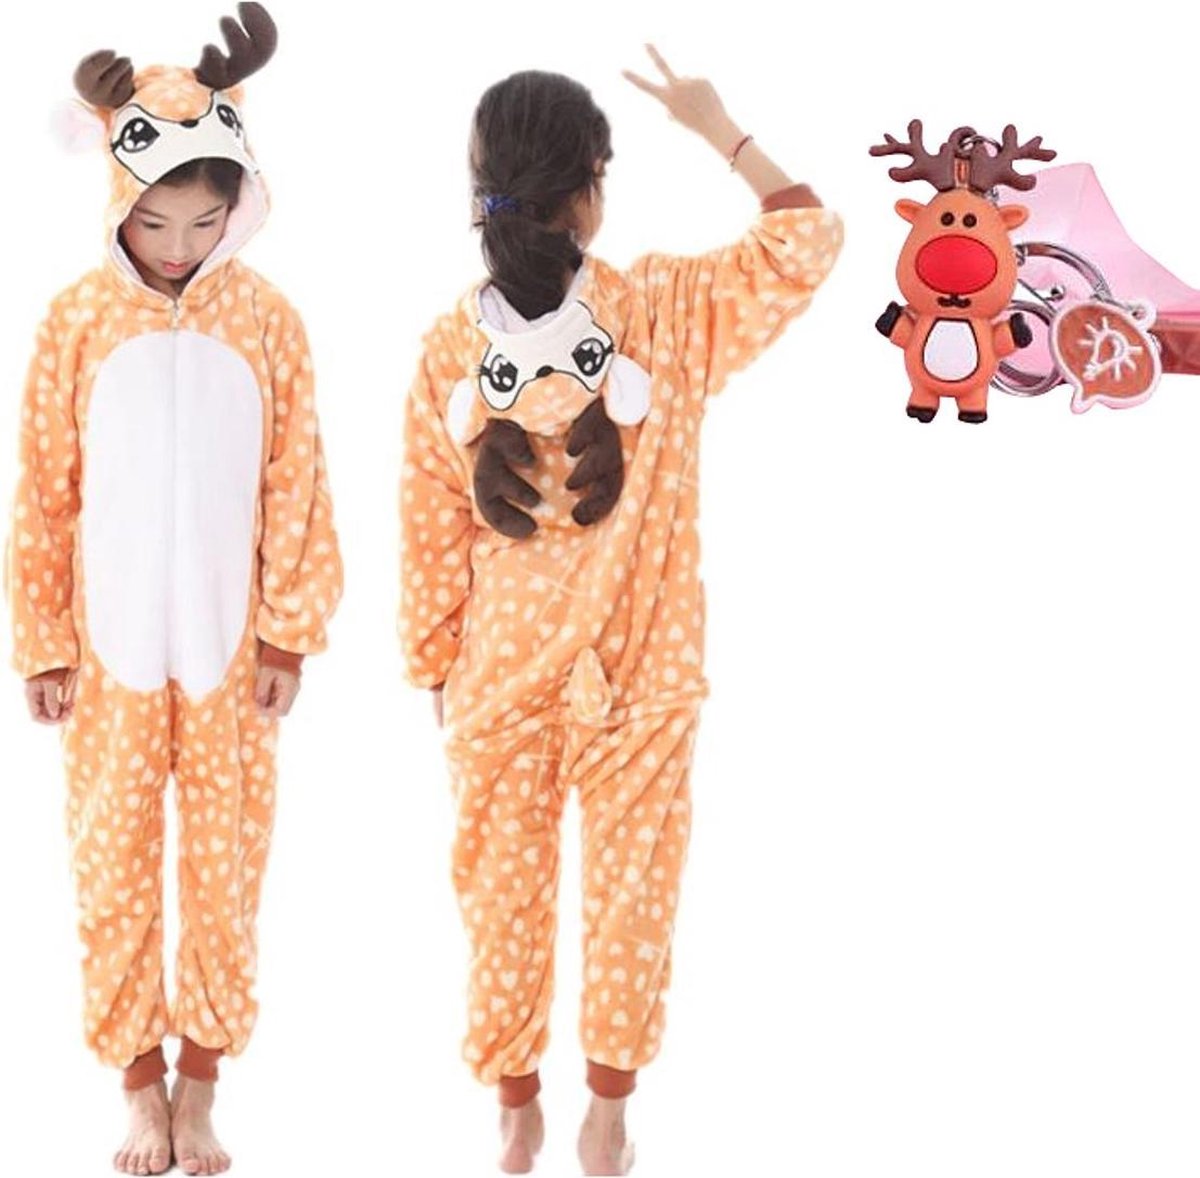 Onesie rendier- hert - eland dieren kostuum jumpsuit pyjama kinderen - 116-122 (120) + GRATIS tas/sleutelhanger verkleedkleding